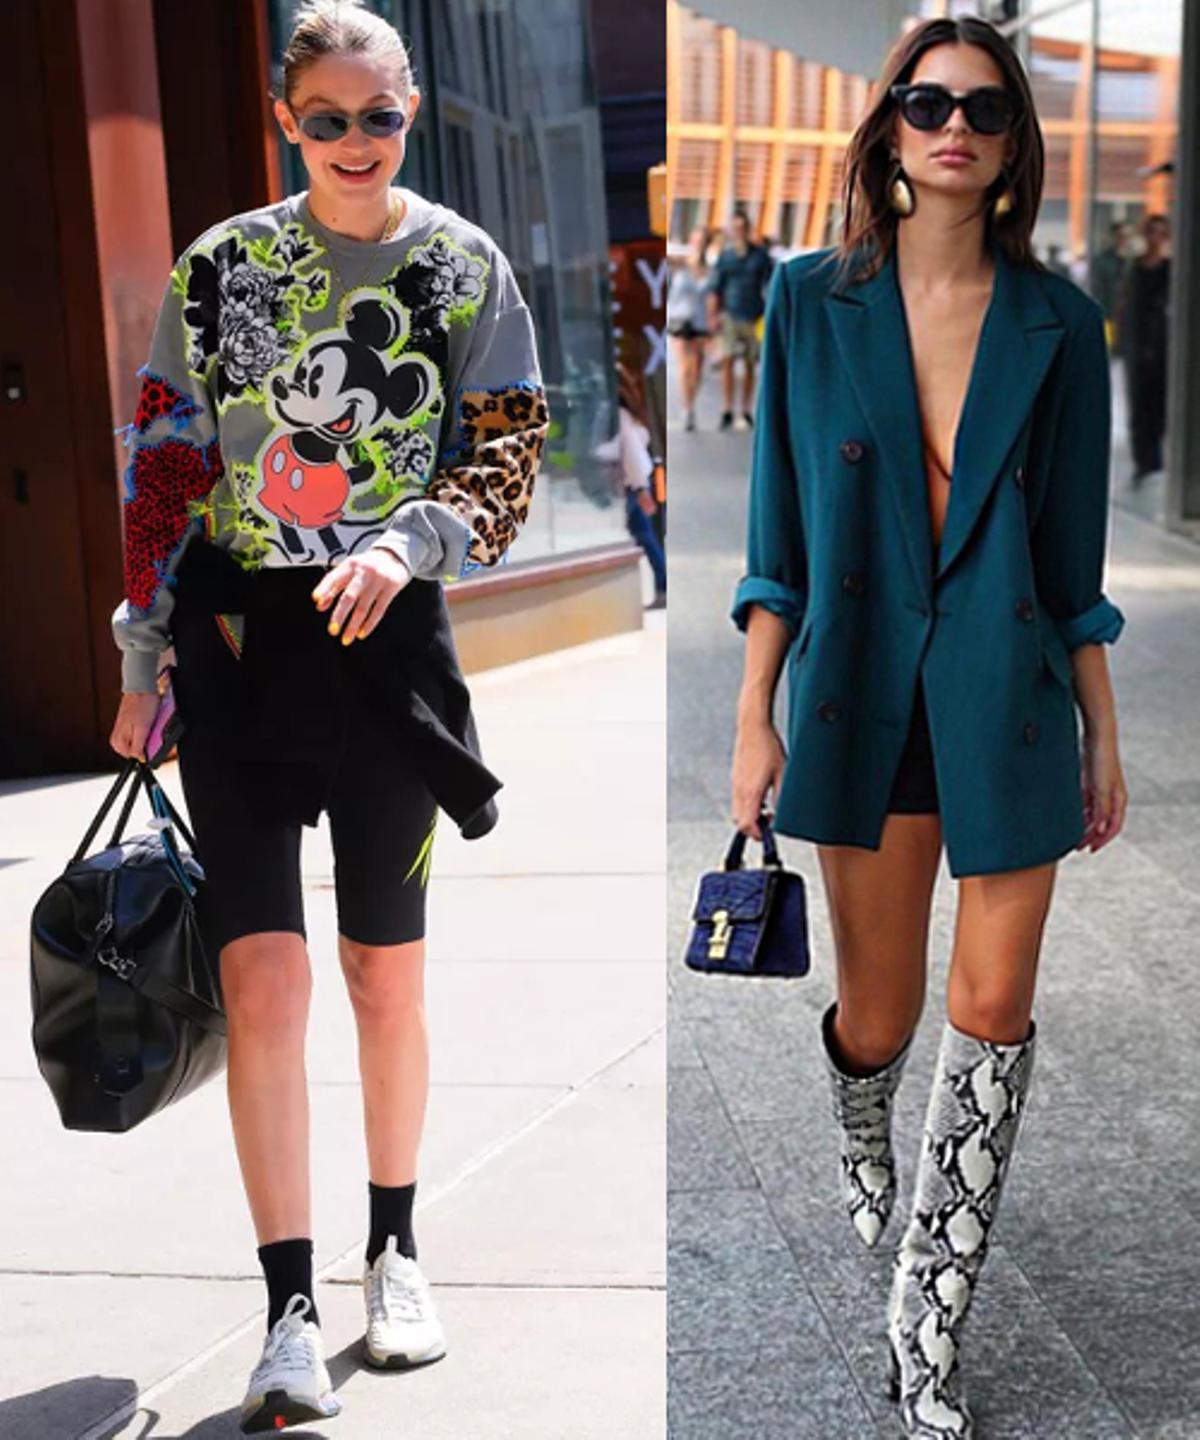 Las modelos Gigi Hadid y Emily Ratajkowski, fans de la estética ciclista en sus 'looks' de calle.